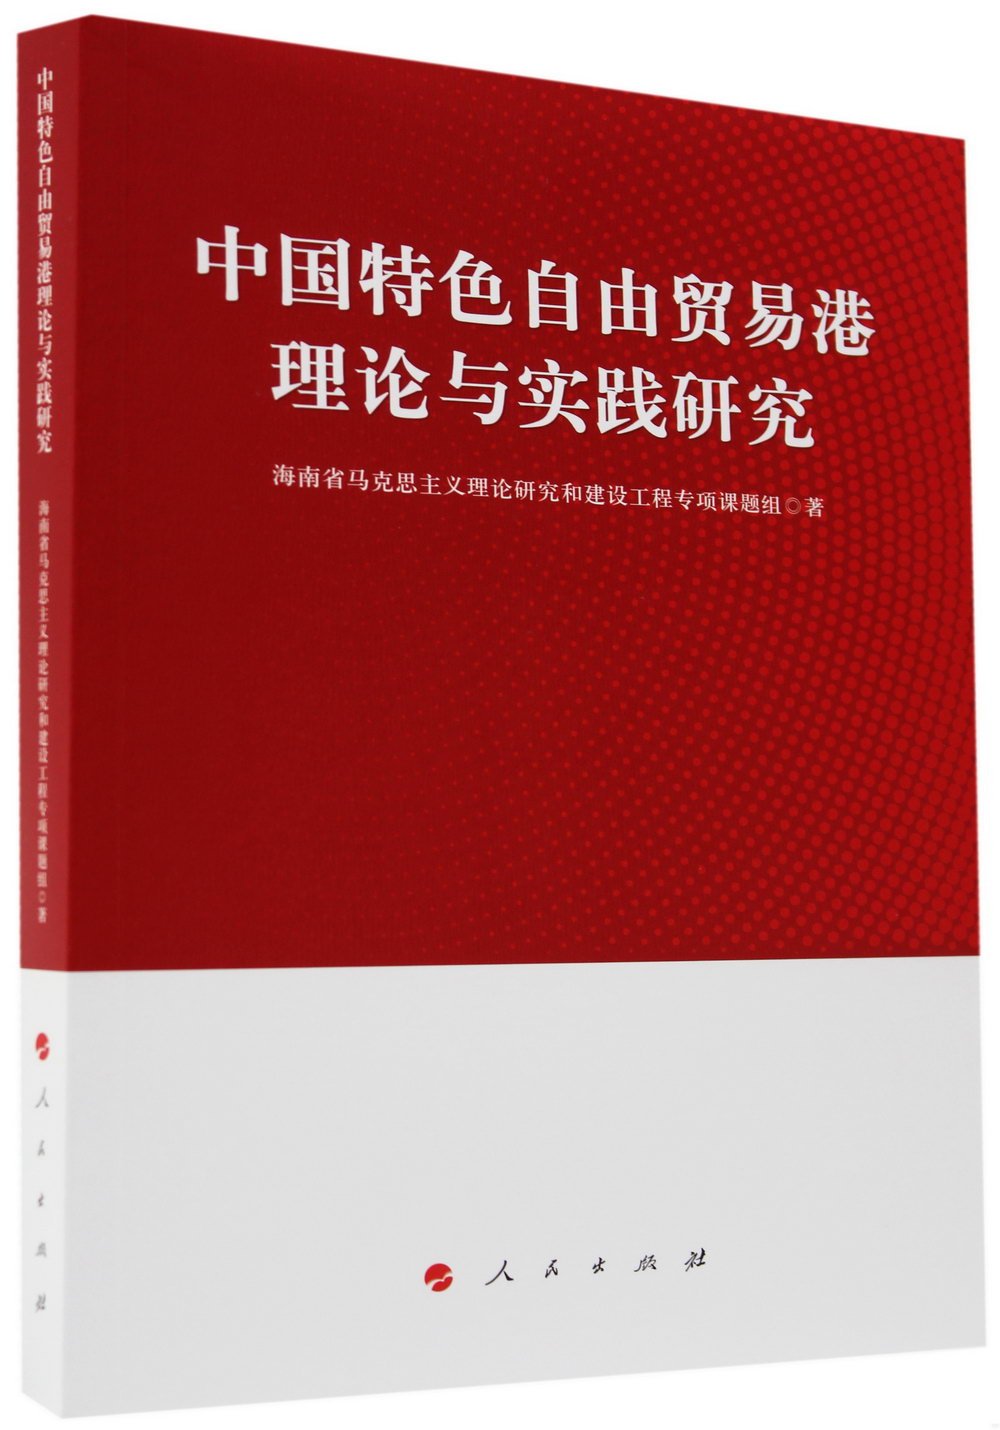 中國特色自由貿易港理論與實踐研究